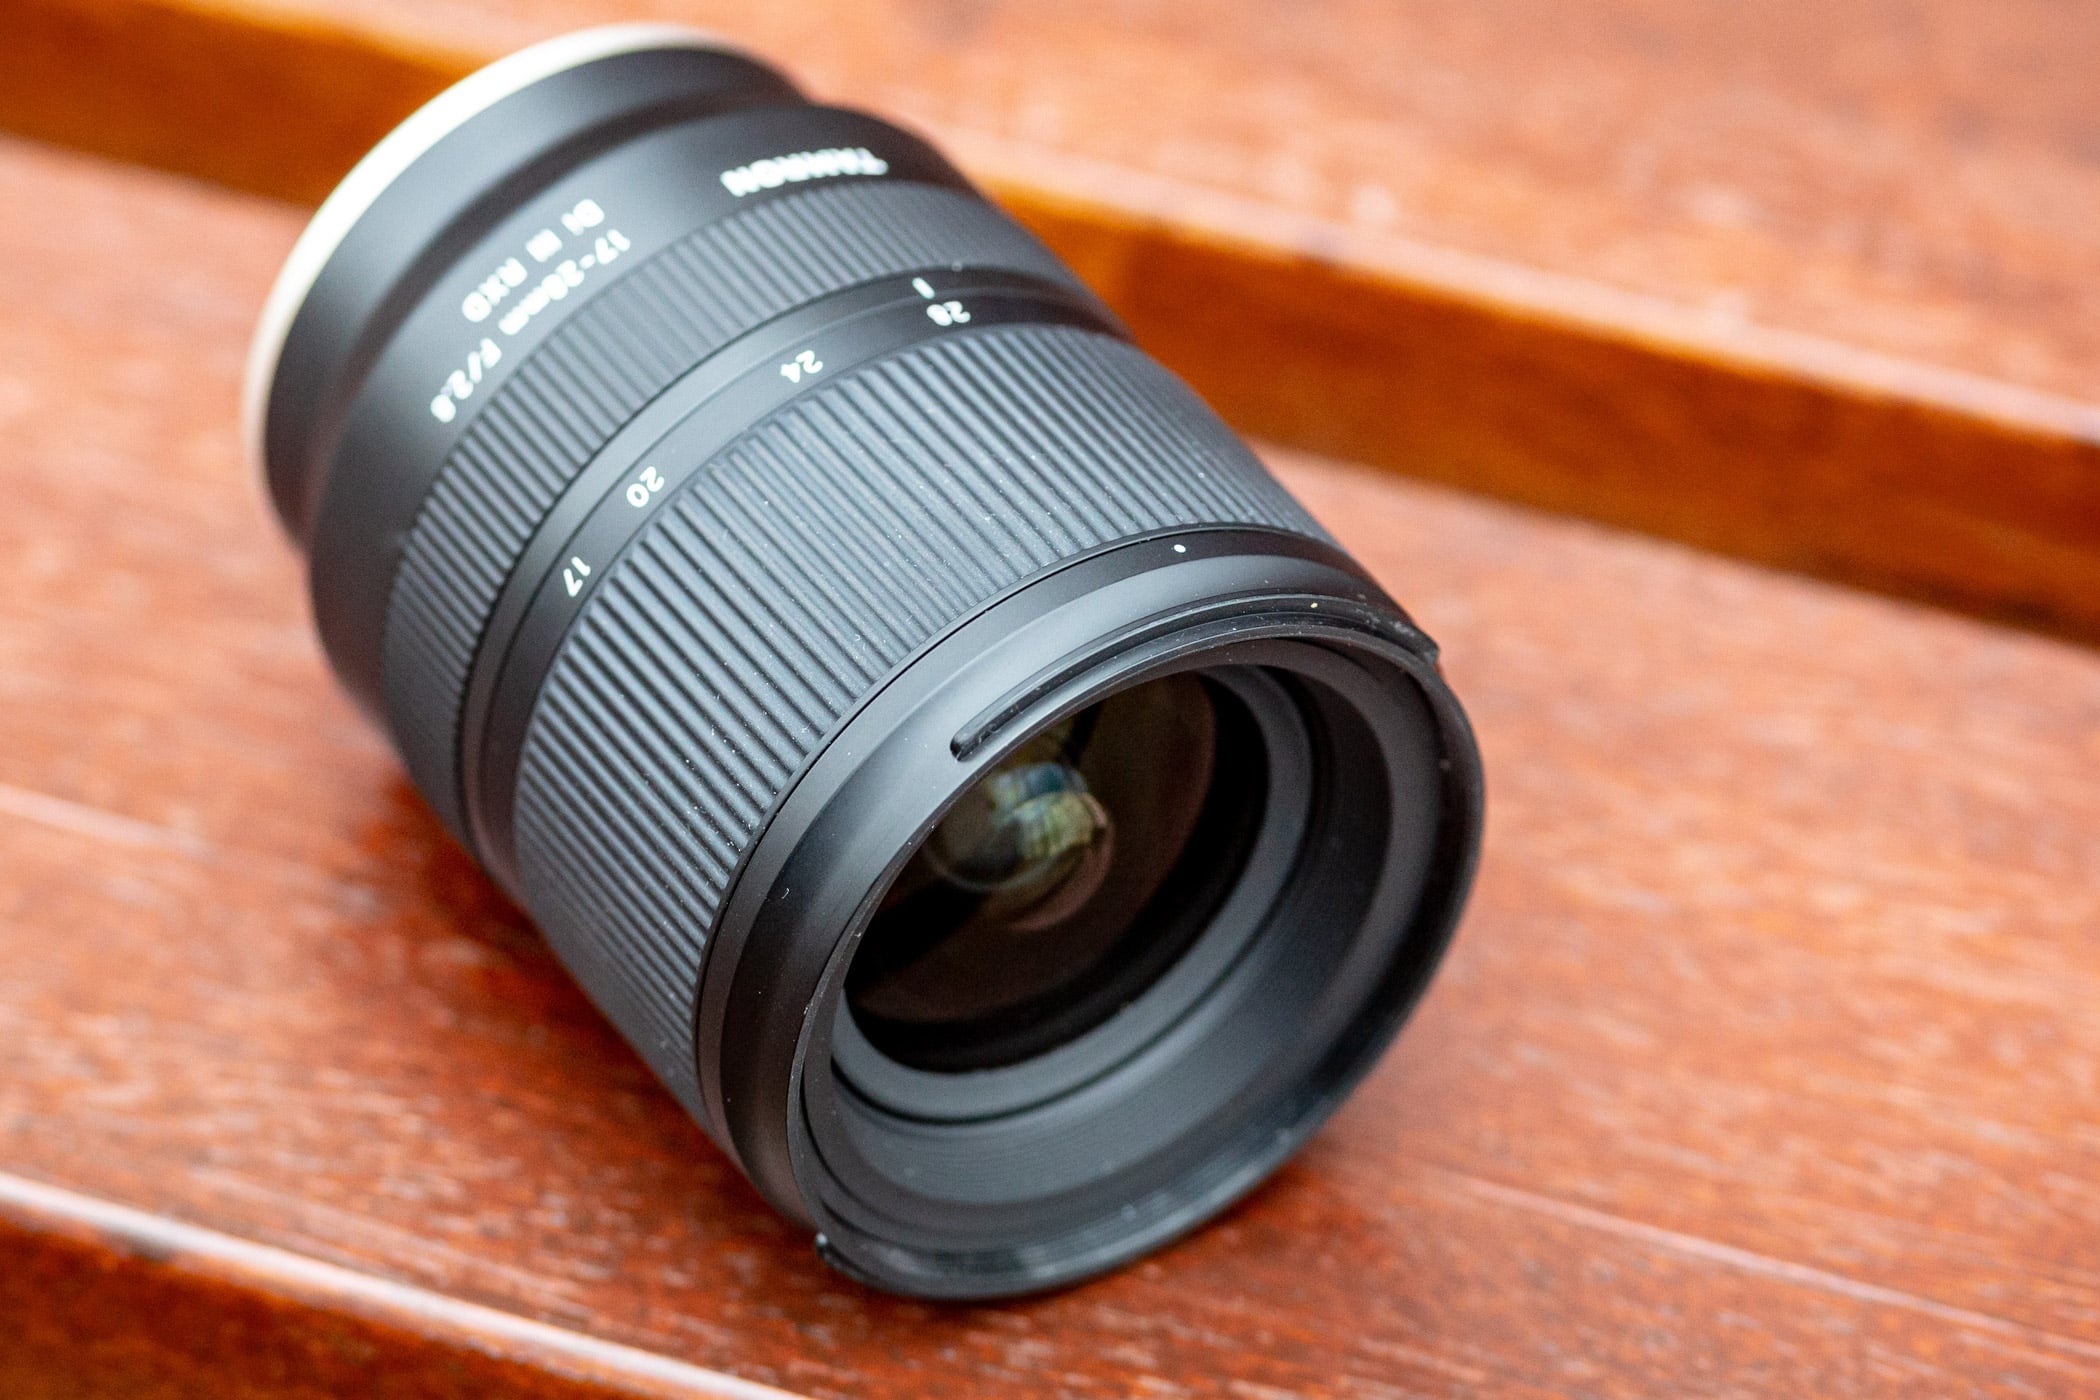 Ống kính Tamron 17-28mm F2.8 Di III RXD cho Sony E